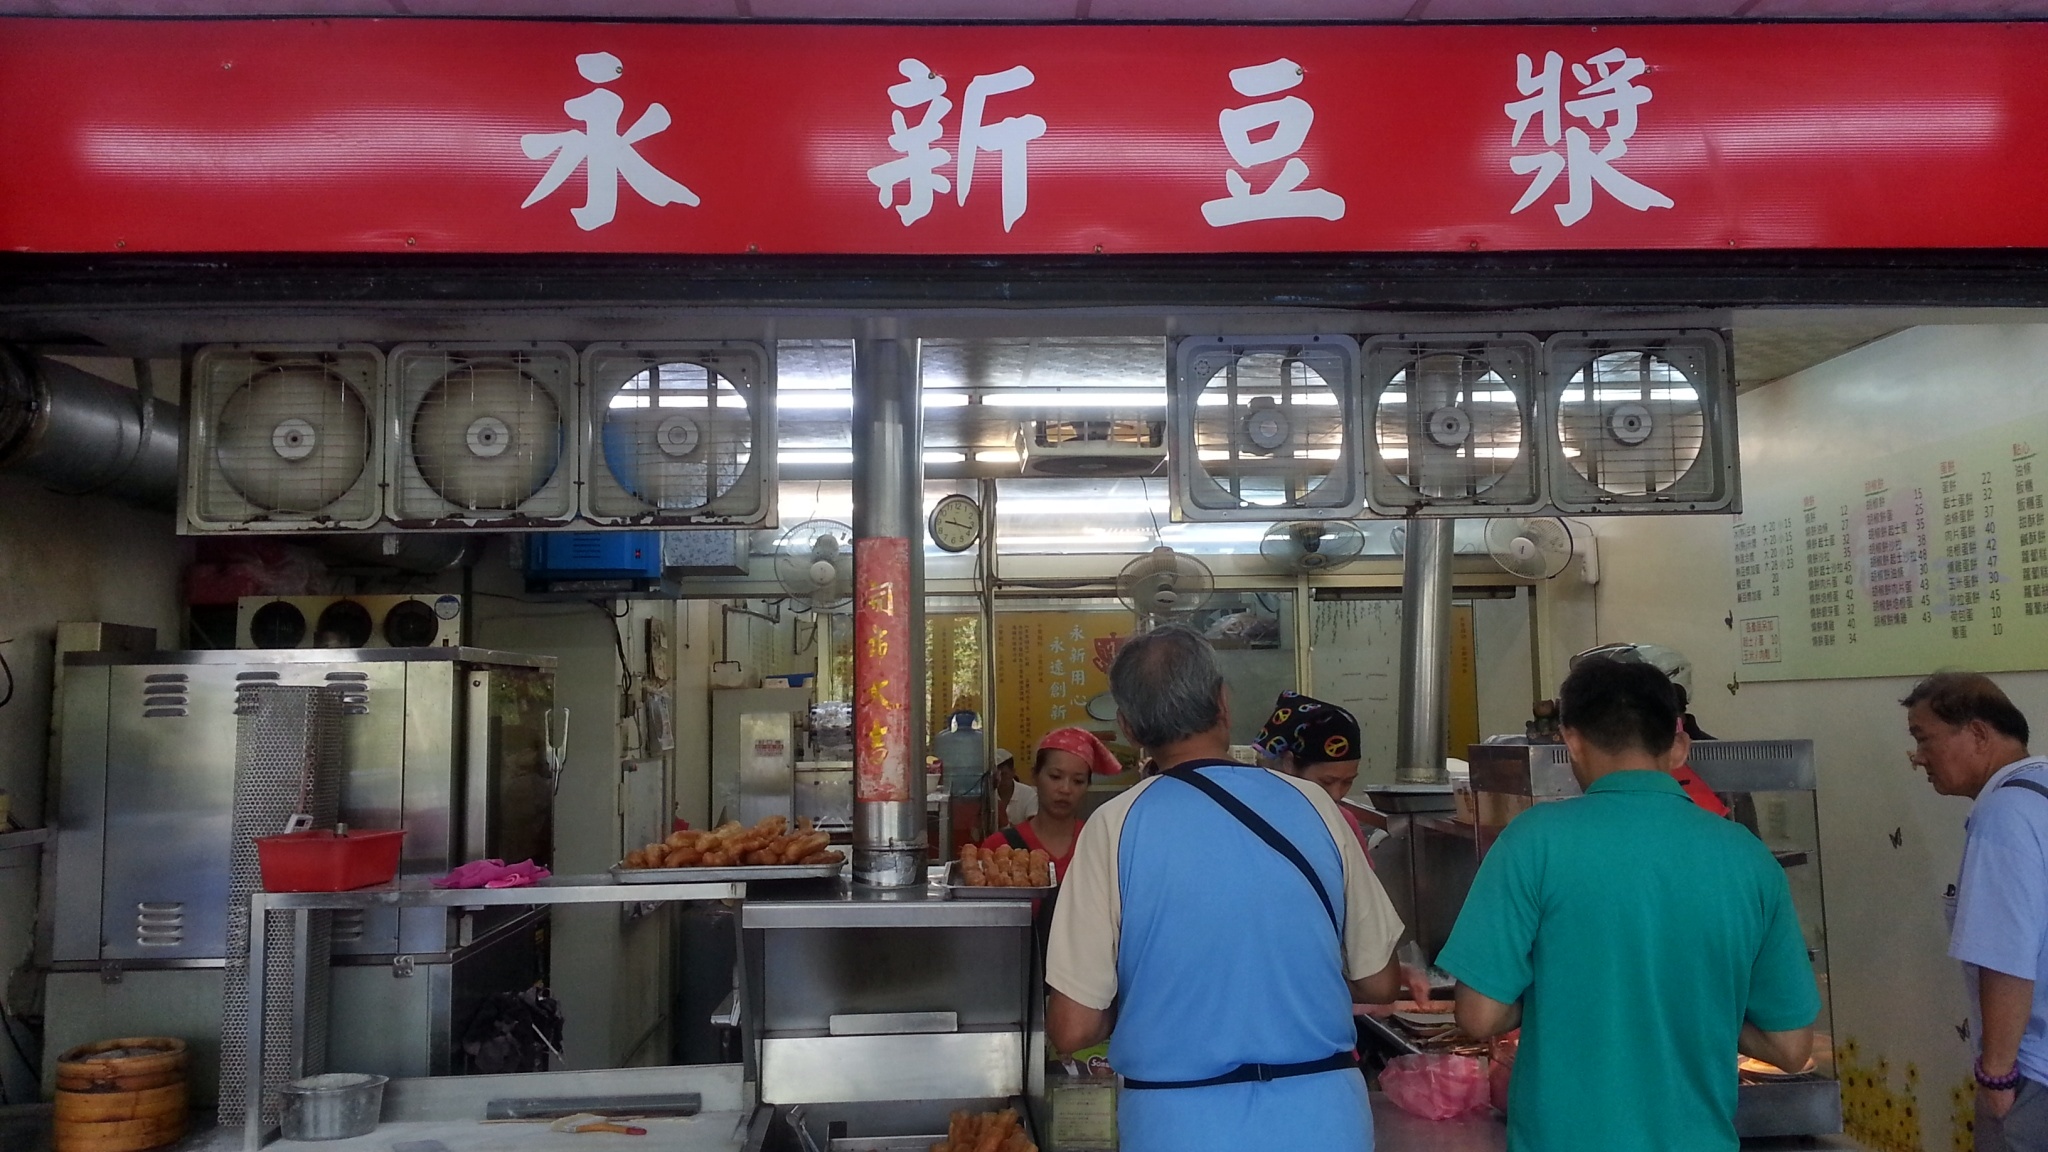 永和人必吃的中式早餐店永新豆漿